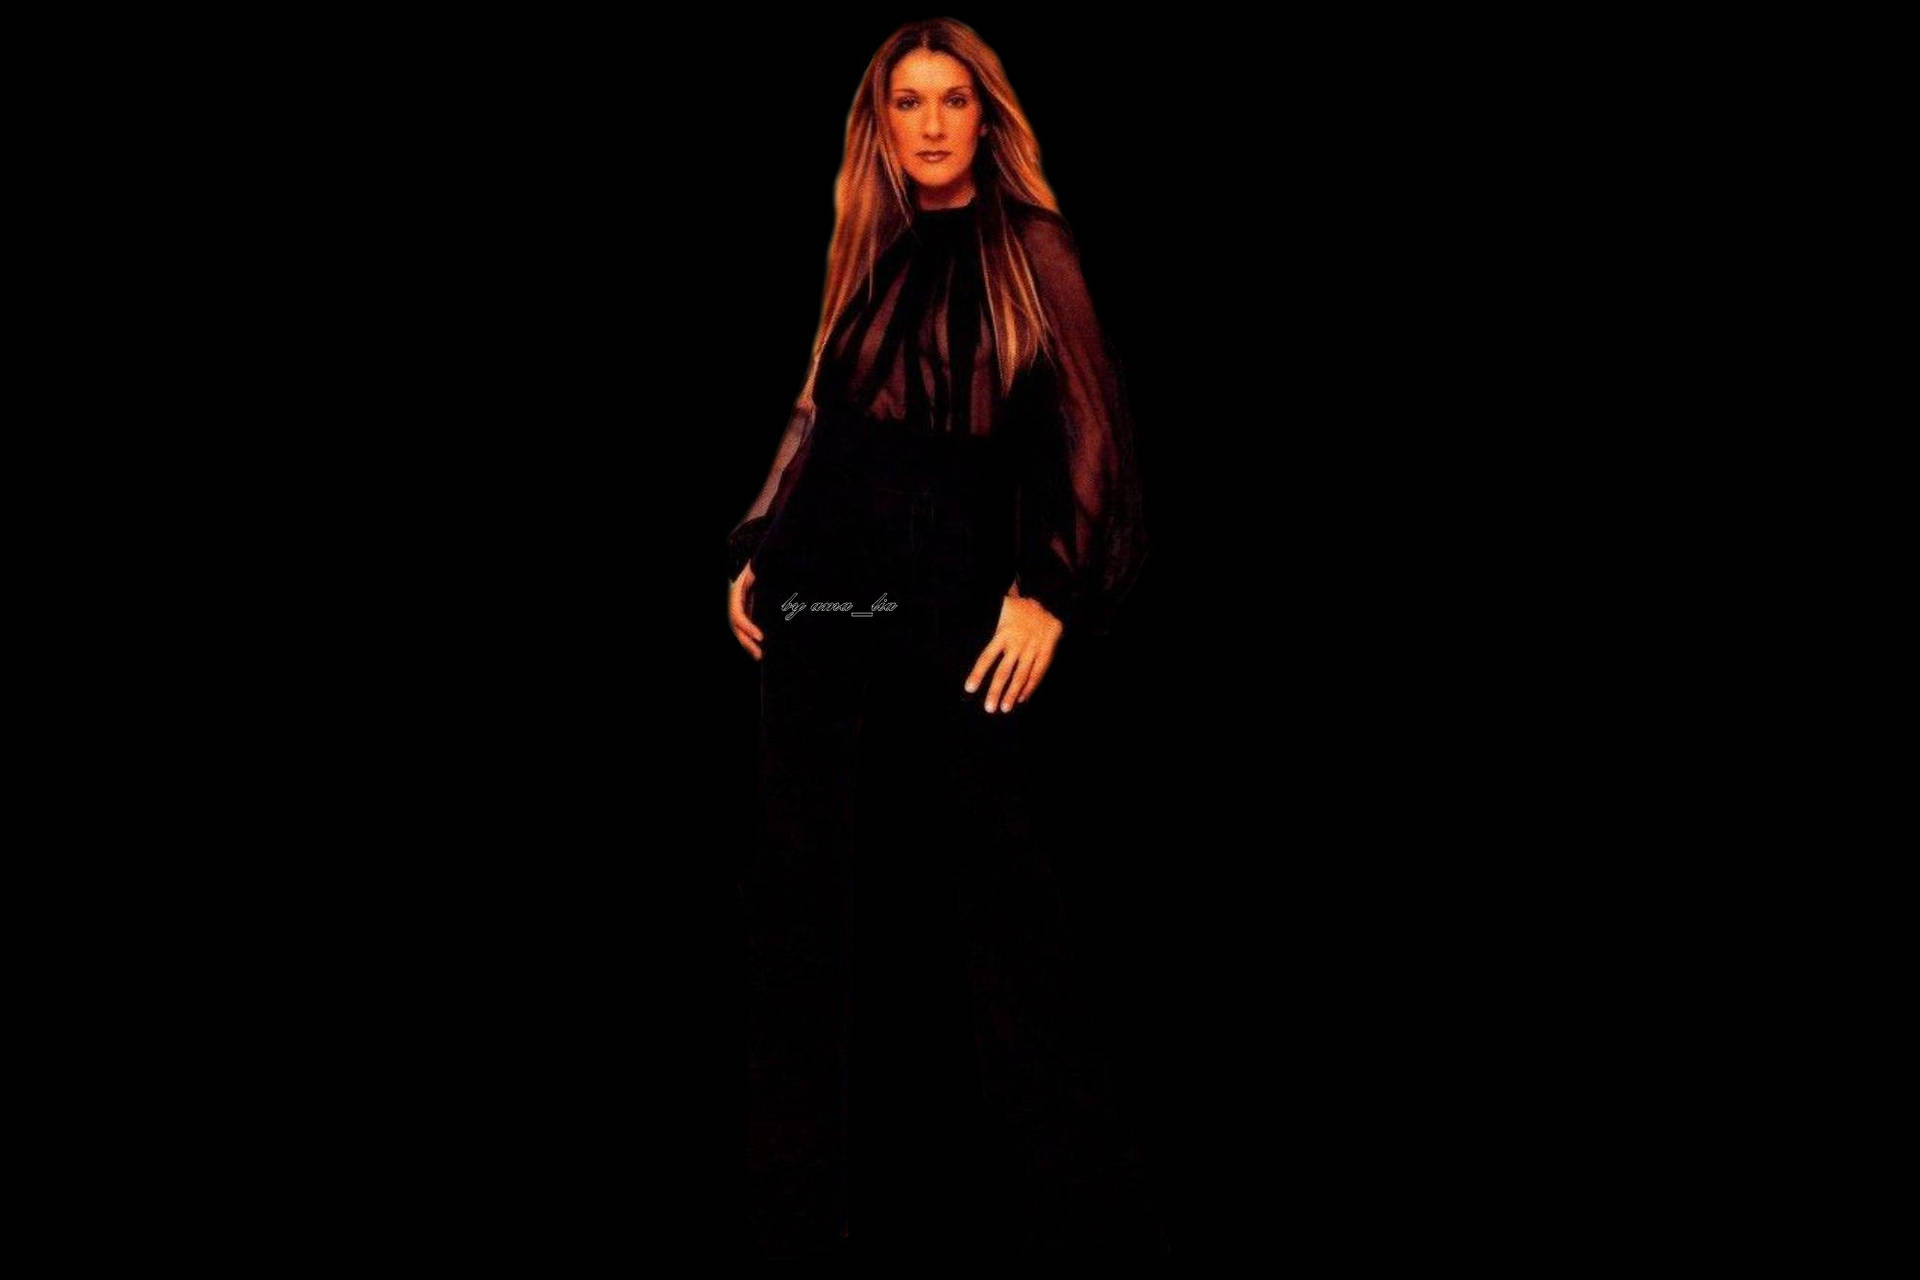 Celine Dion In The Dark Background